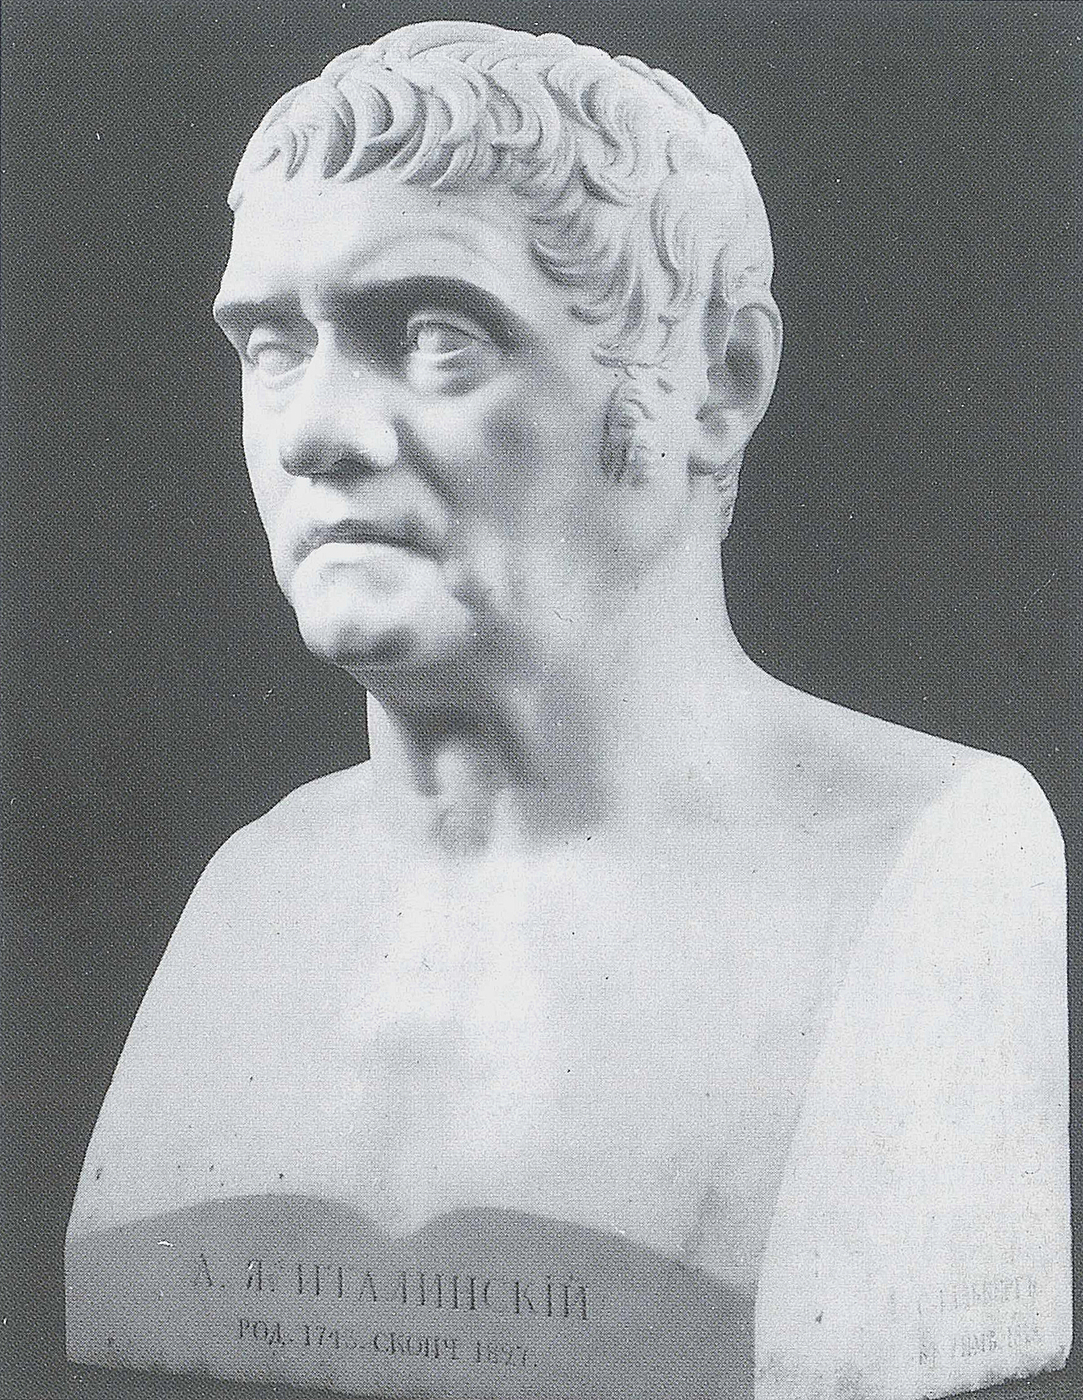 Samuil Hallberg: A. J. Italinskij (1743-1827), den russiske gesant i Napoli og Rom, 1823